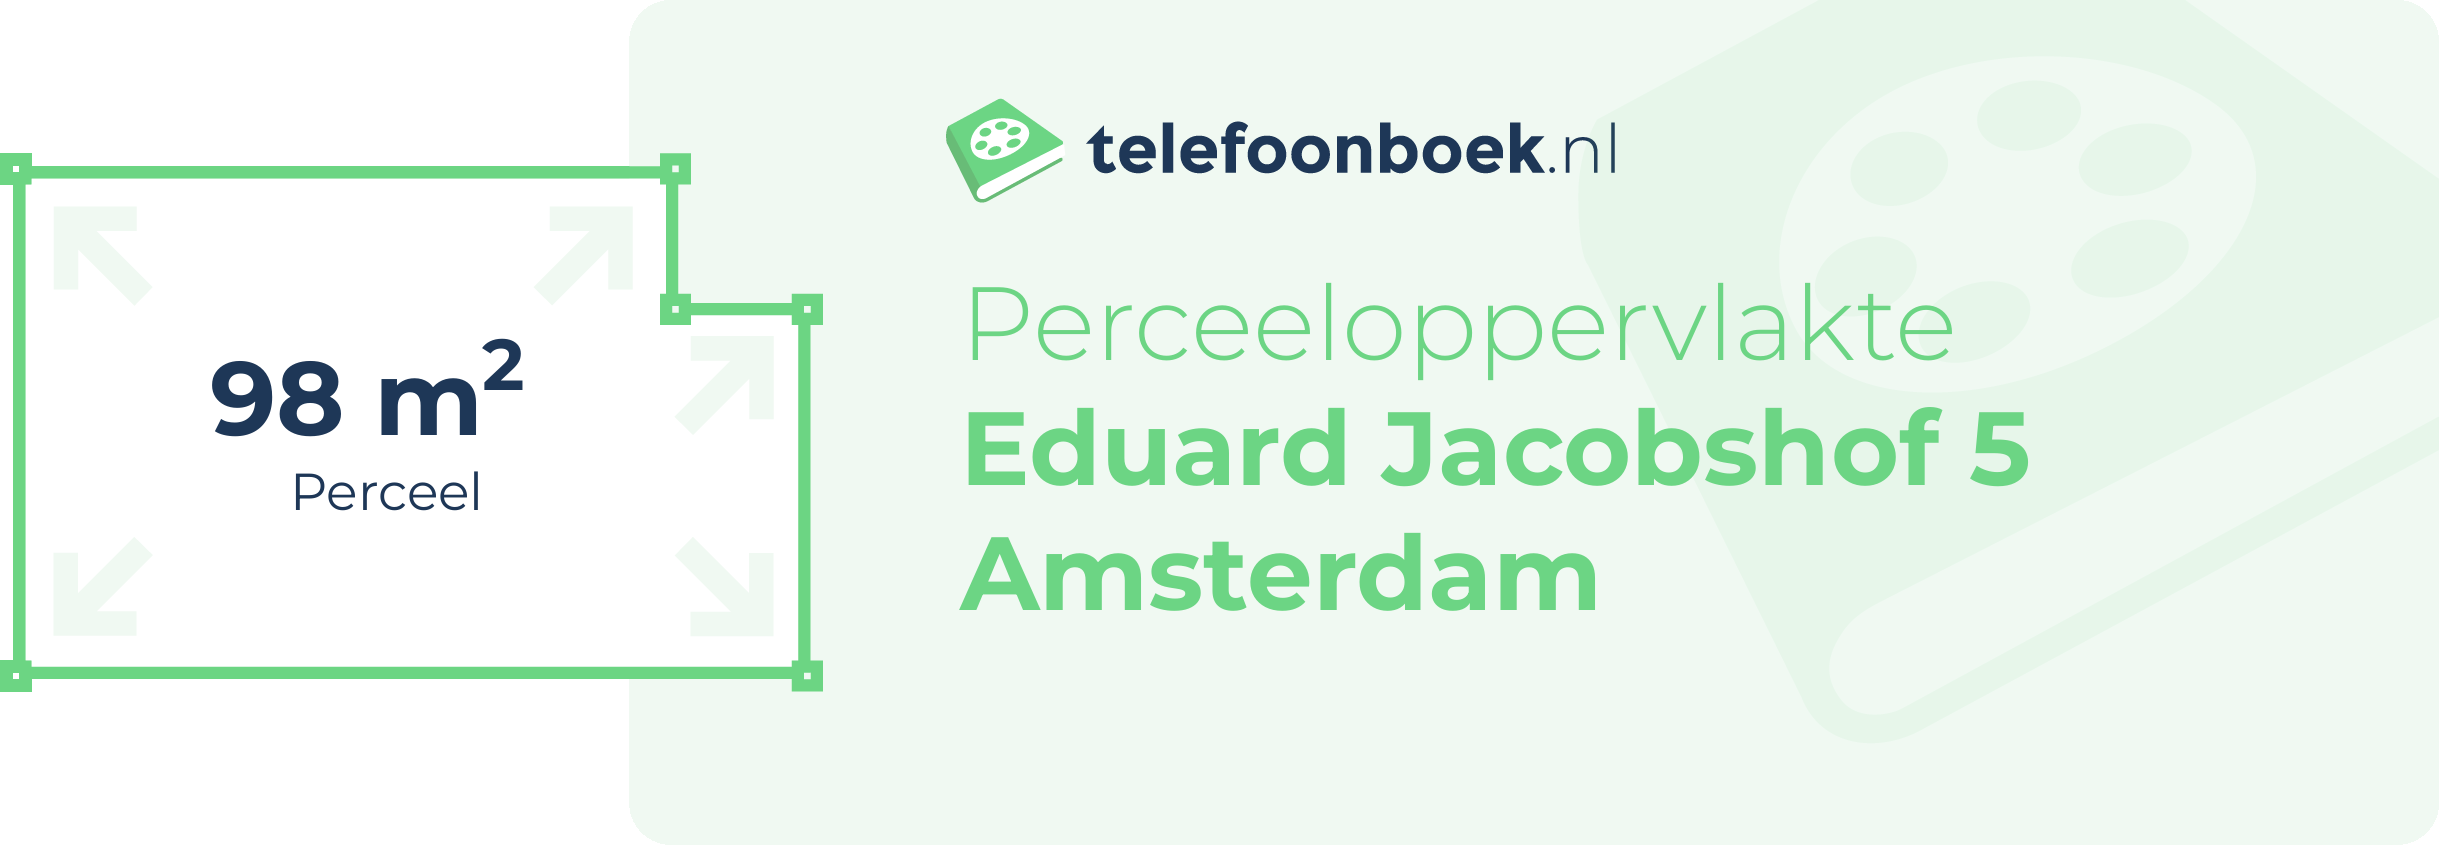 Perceeloppervlakte Eduard Jacobshof 5 Amsterdam